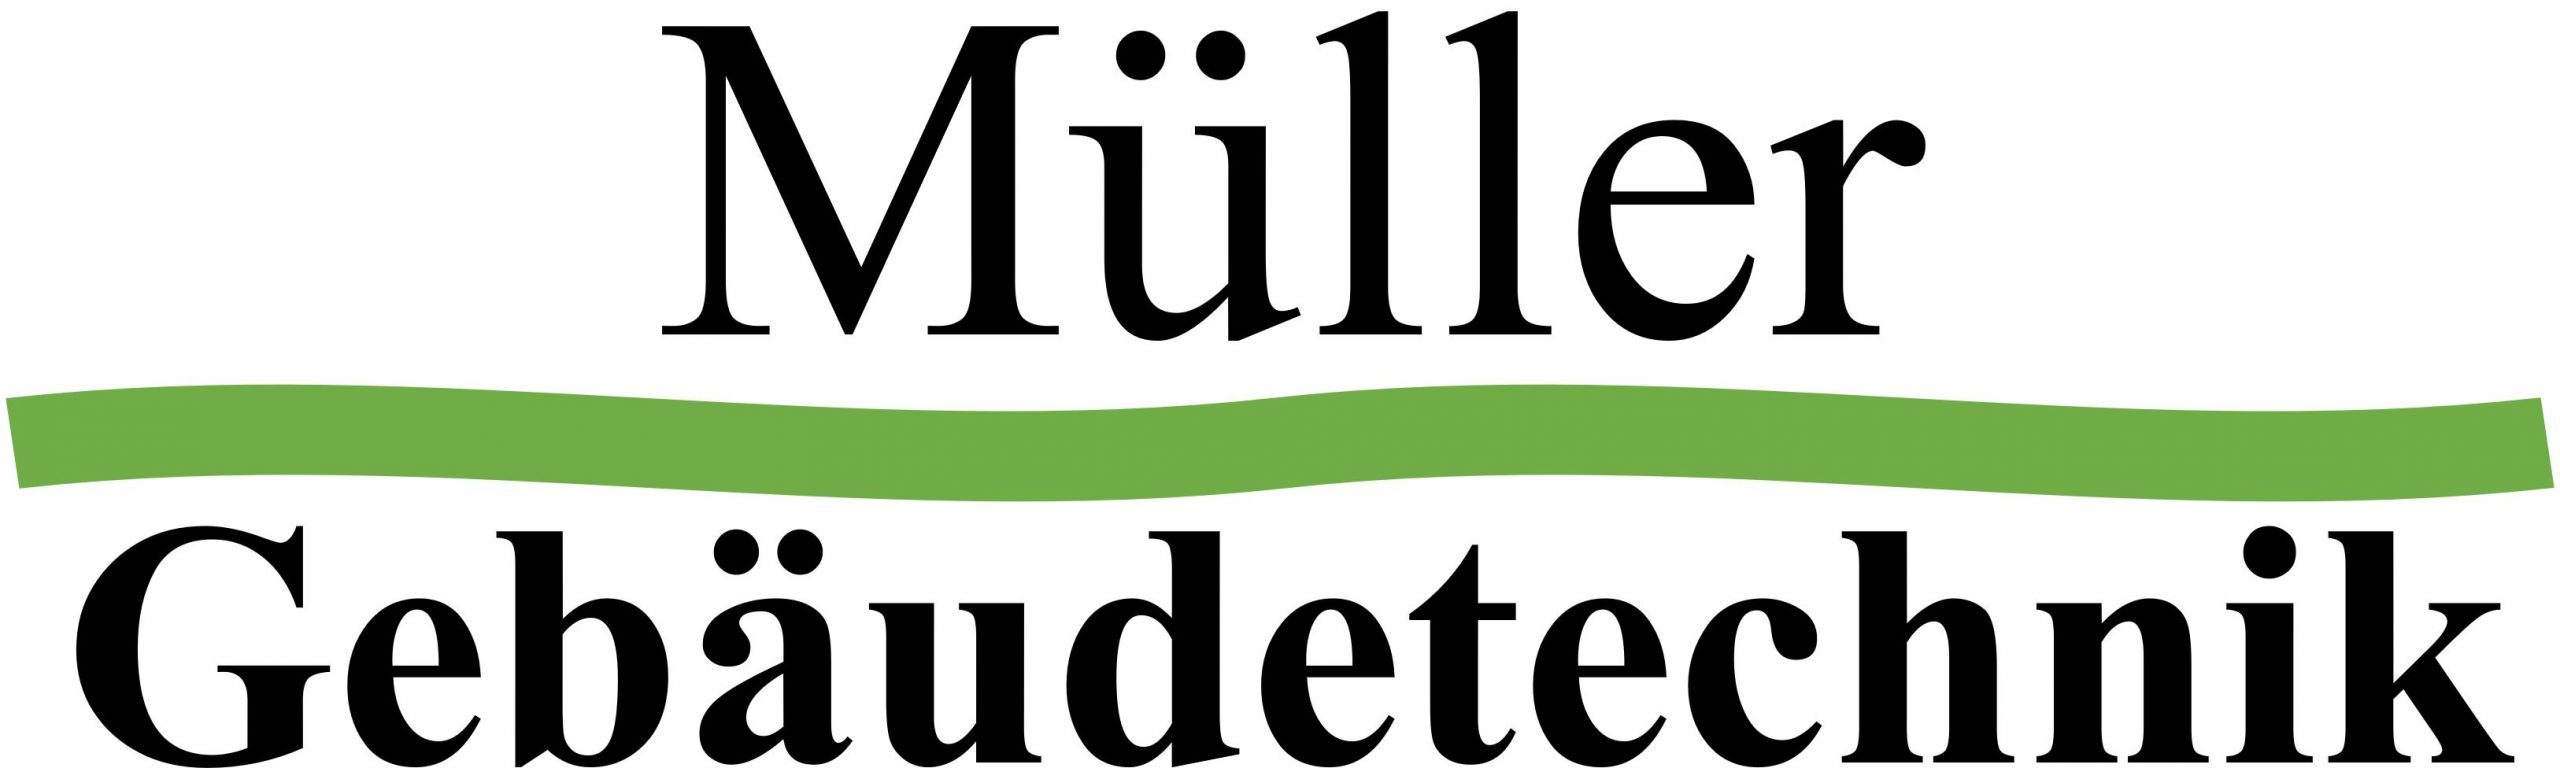 Müller Gebäudetechnik GmbH